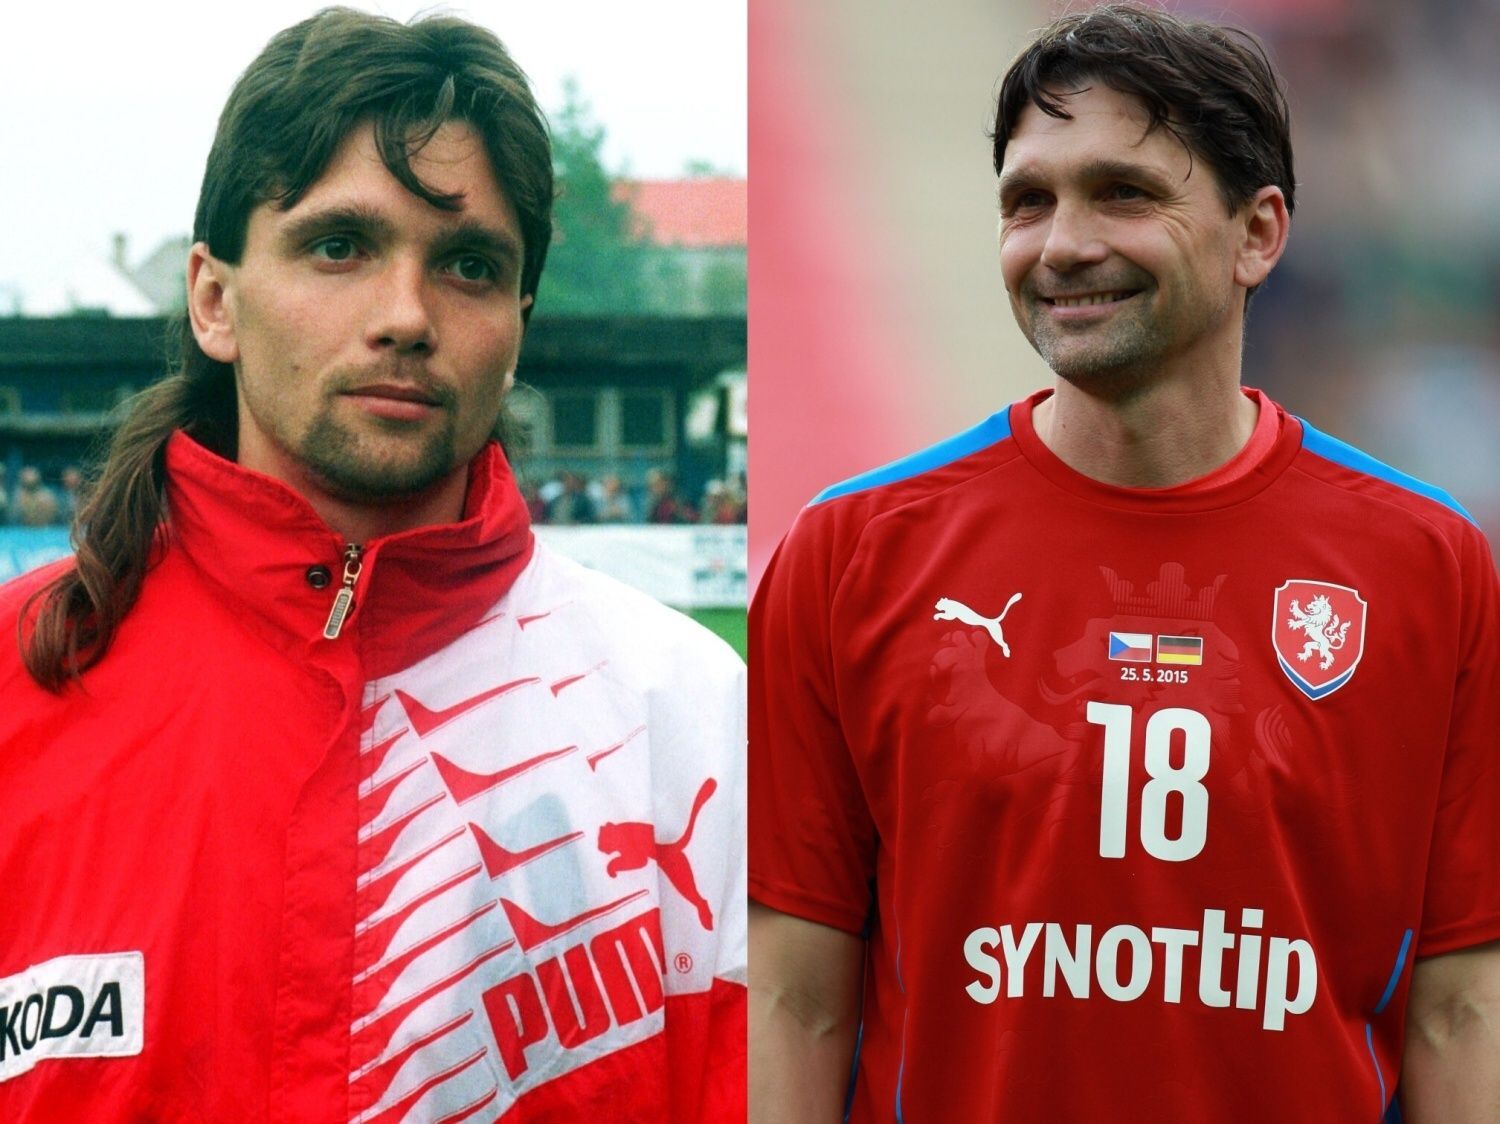 Porovnání 1996 vs. 2015: Martin Kotůlek